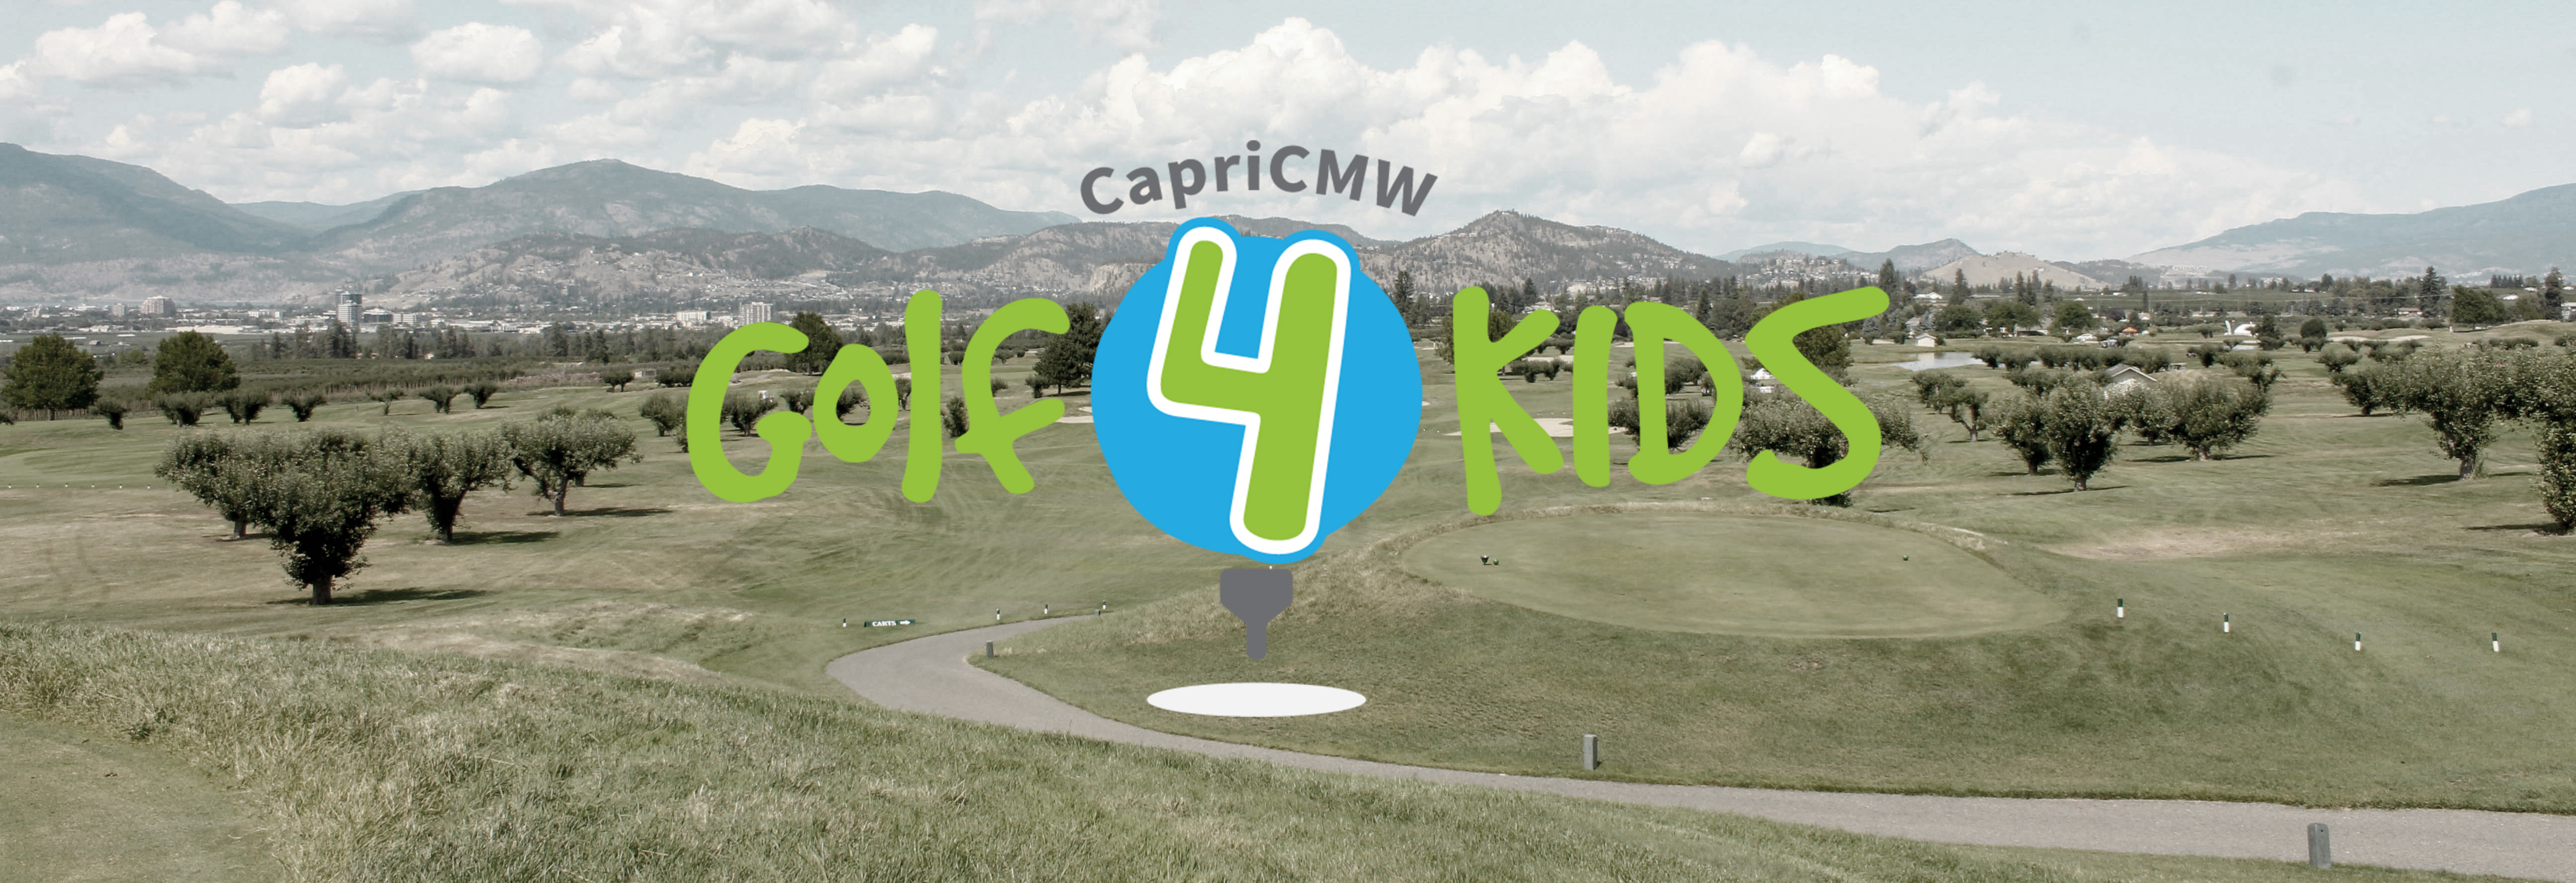 CapriCMW Golf4Kids